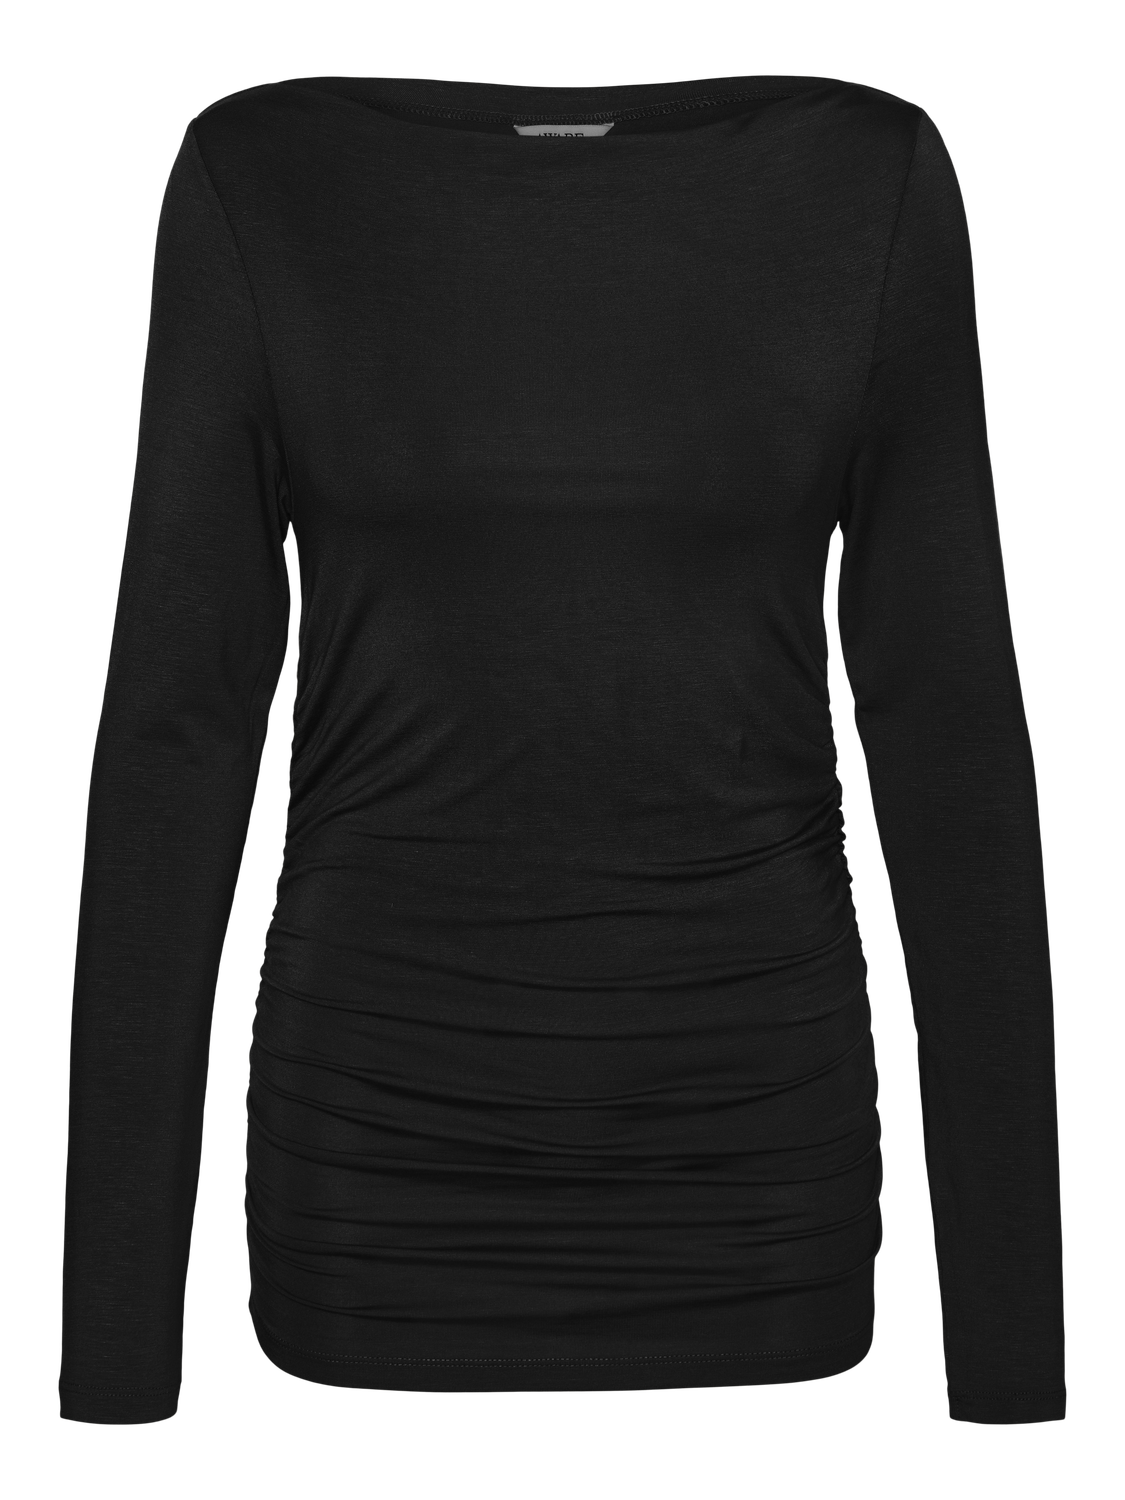 VMSAANVI T-Shirts & Tops - Black